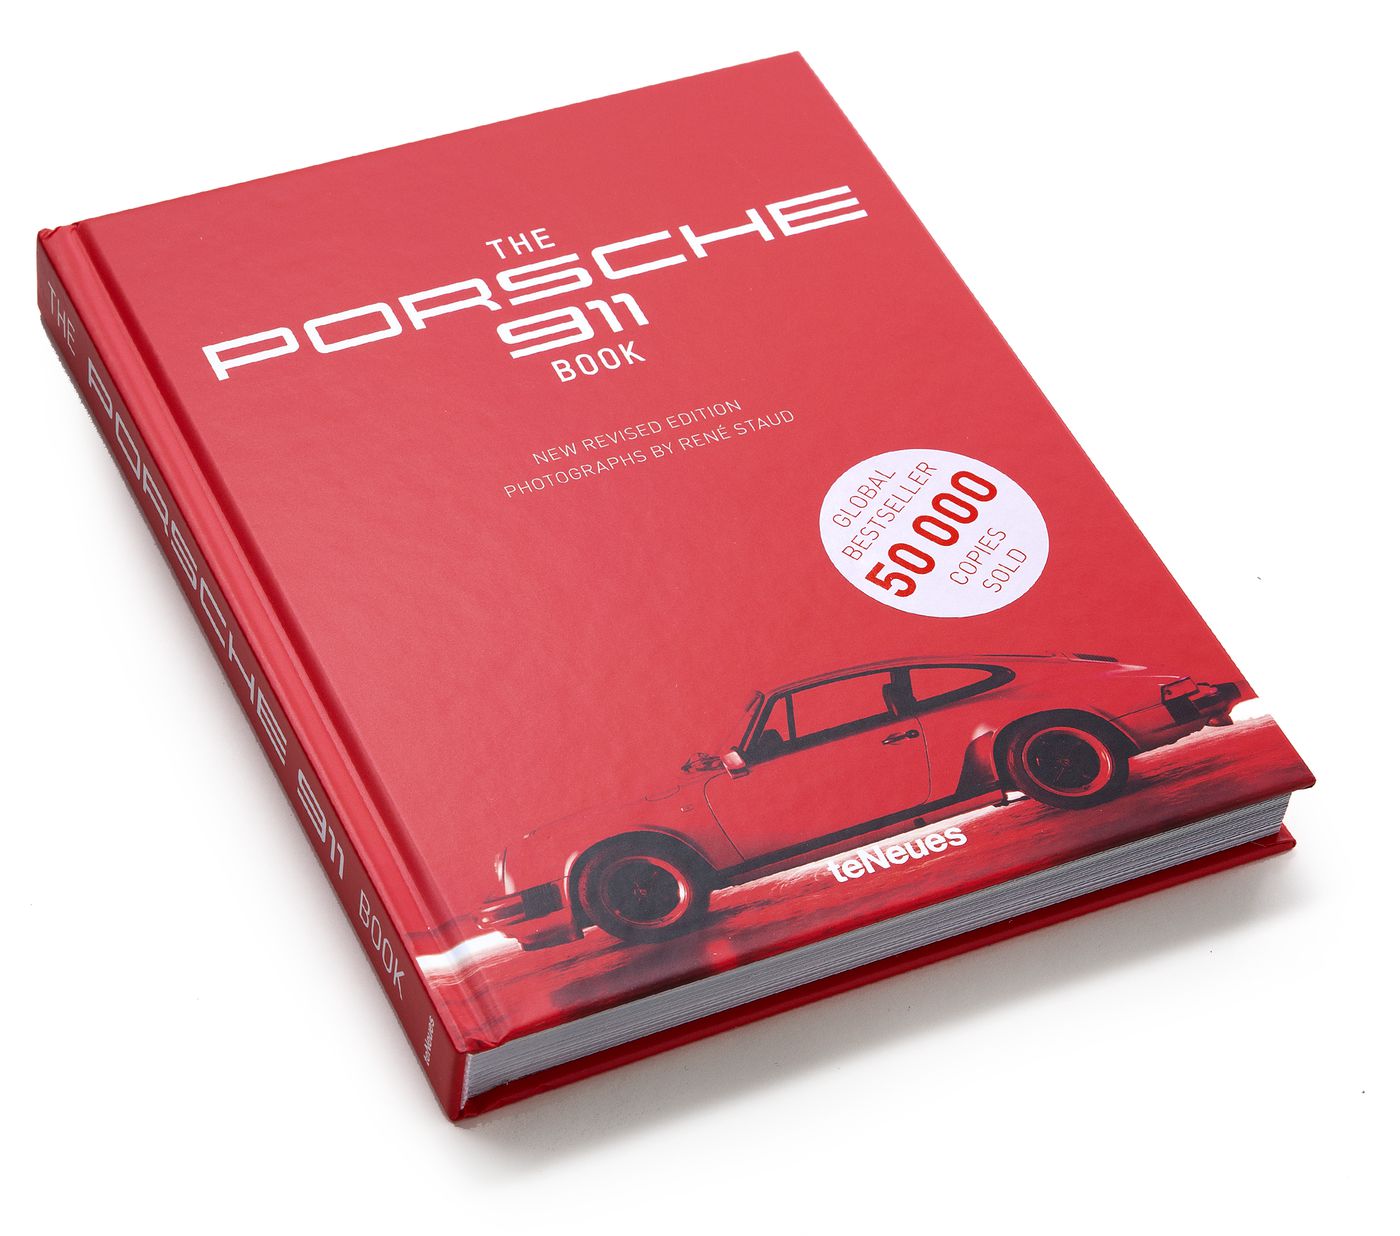 The Porsche 911 Book
The Porsche 911 Book
The Porsche 911 Book
L